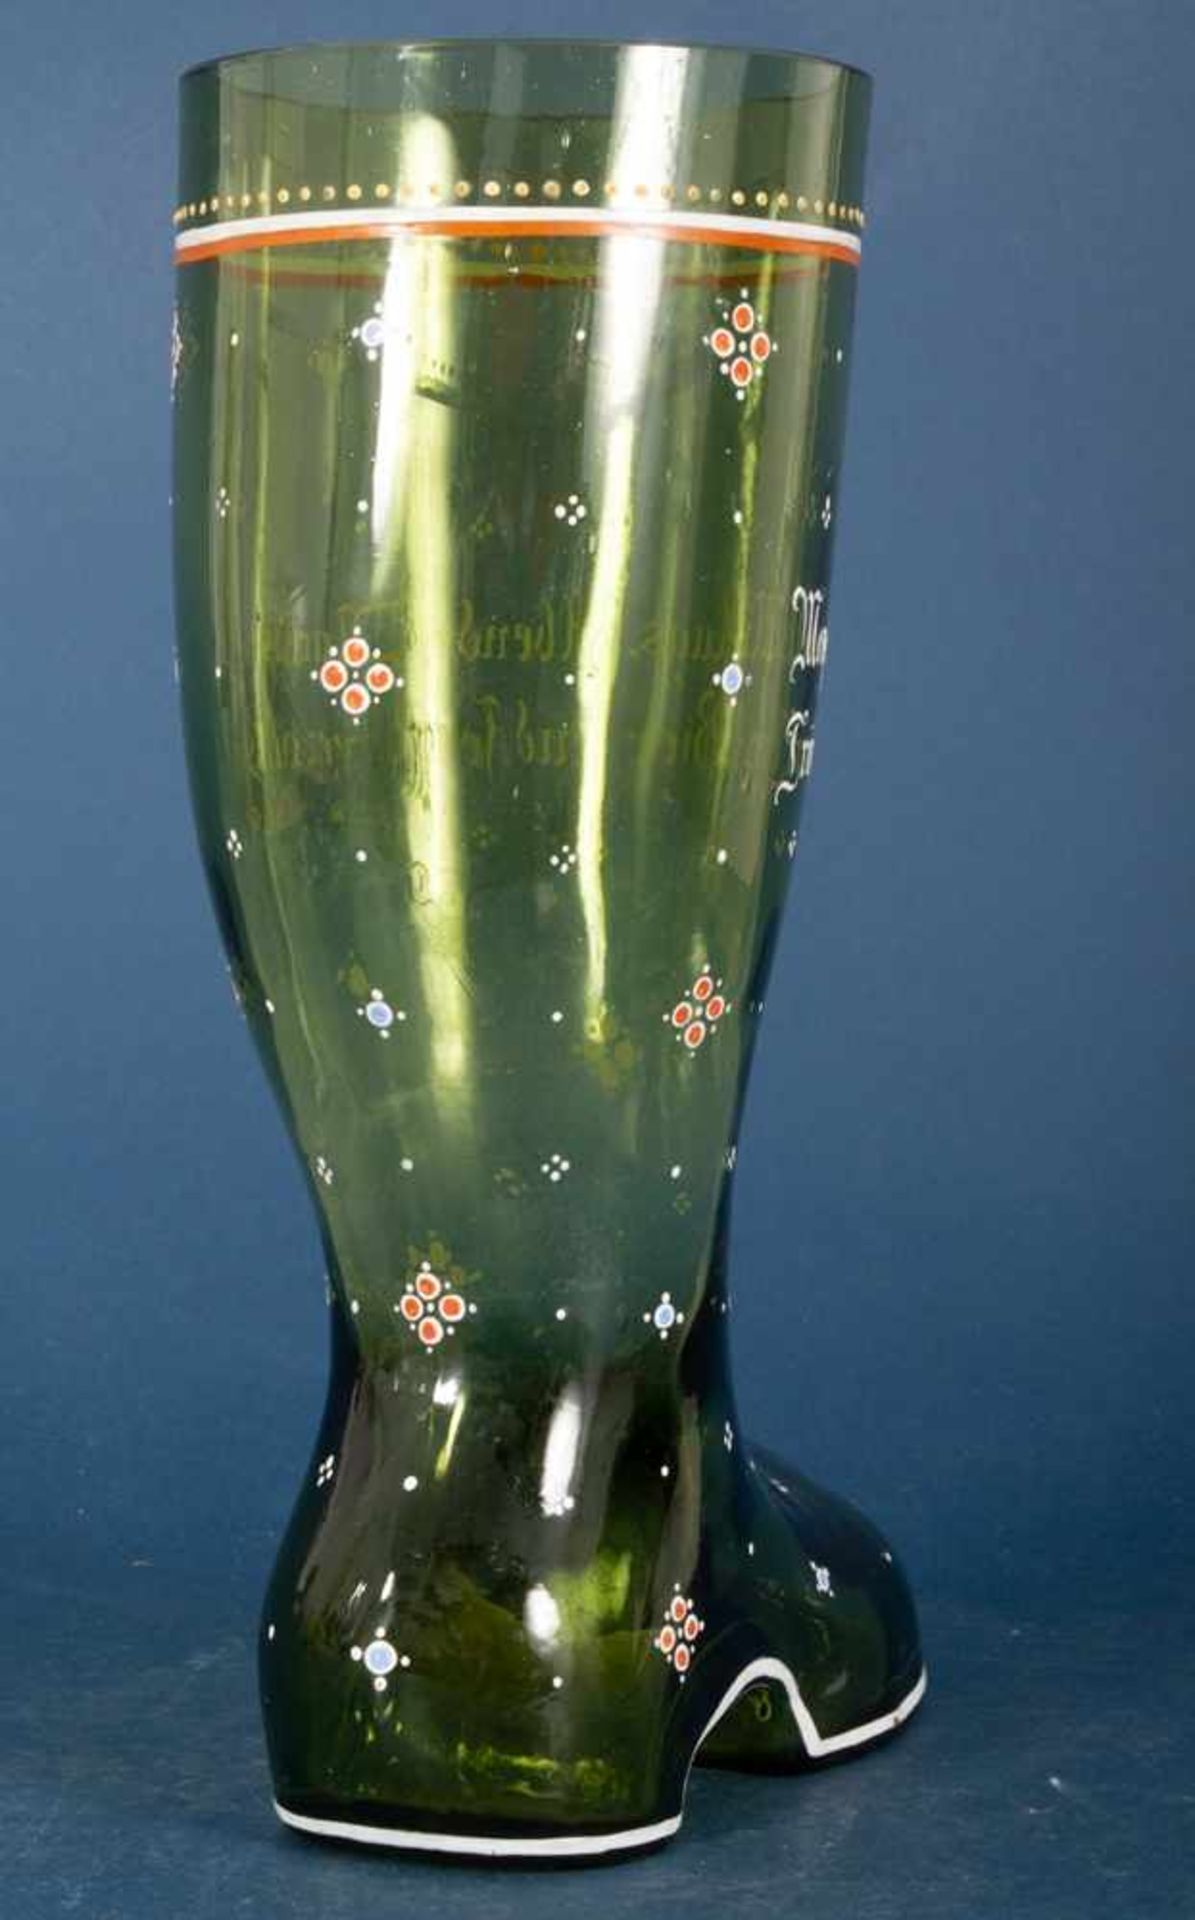 Großer Trinkstiefel. Grünliches Glas mit Emailledekor und Trinkspruch. Sehr schöner Erhalt. - Image 6 of 8